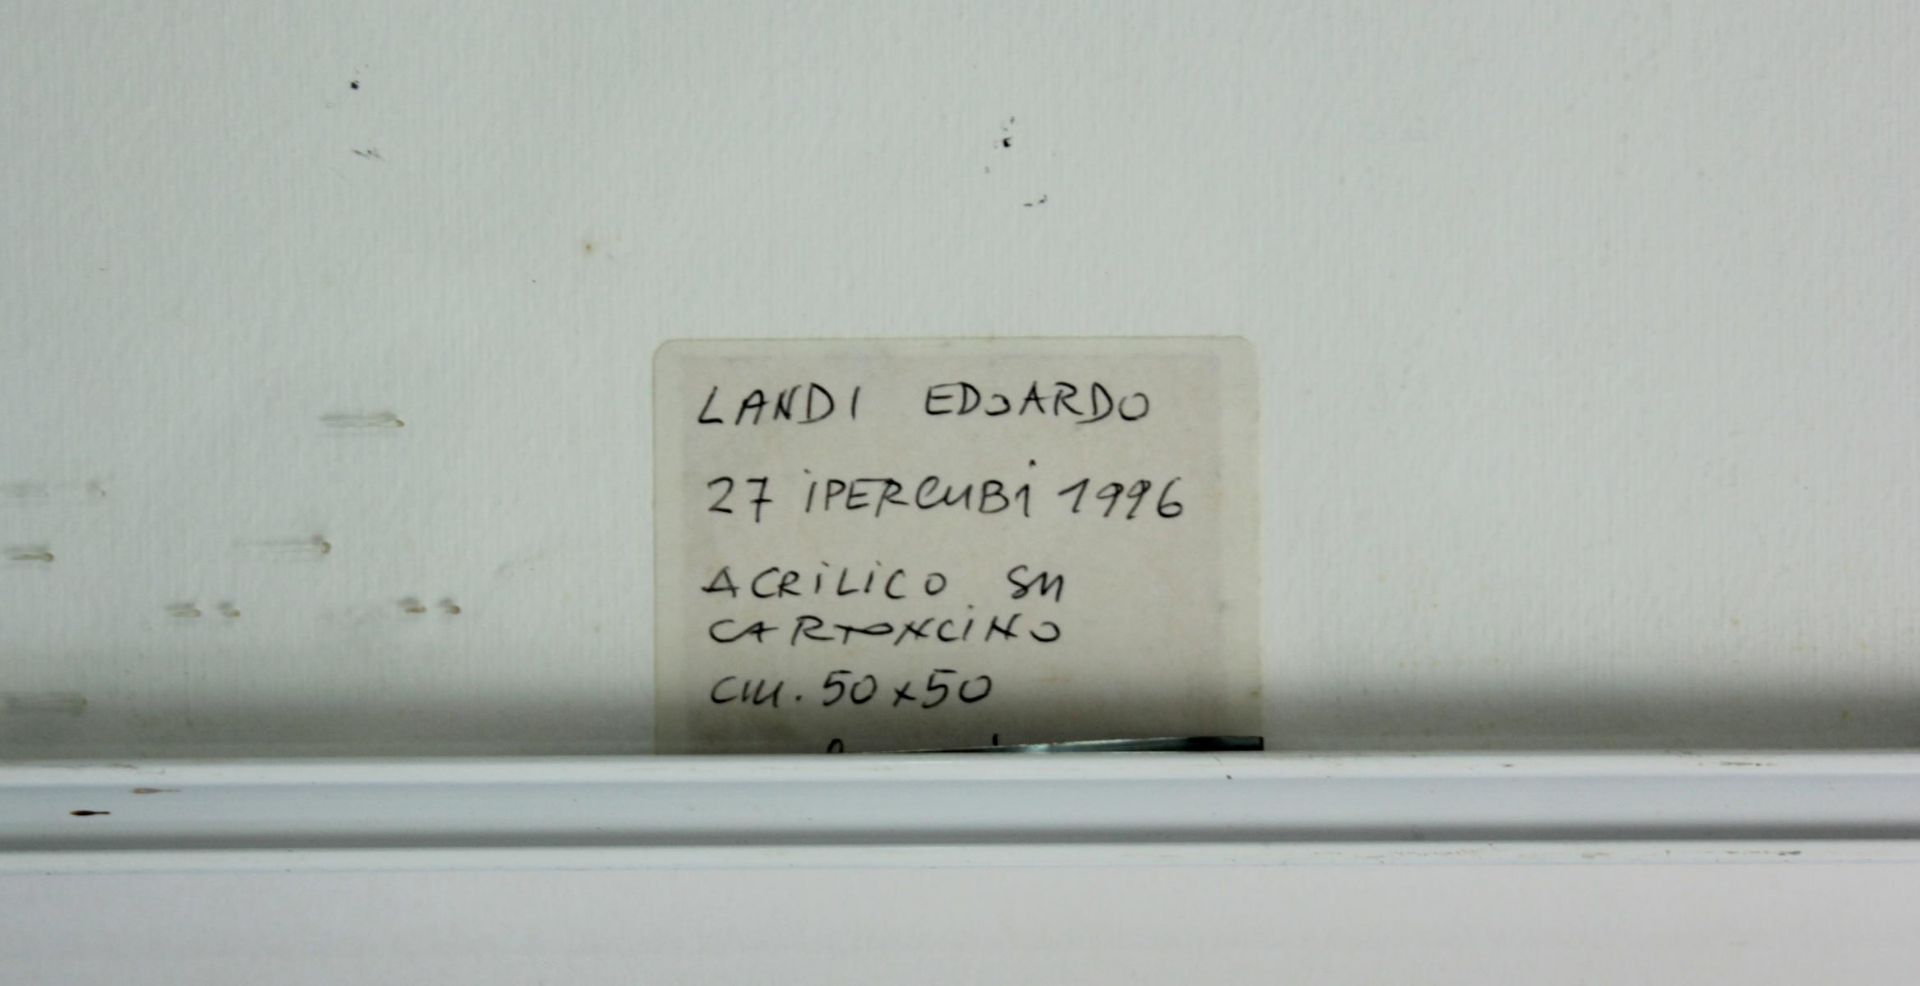 Edoardo Landi "27 ipercubi 1996" - Image 3 of 3